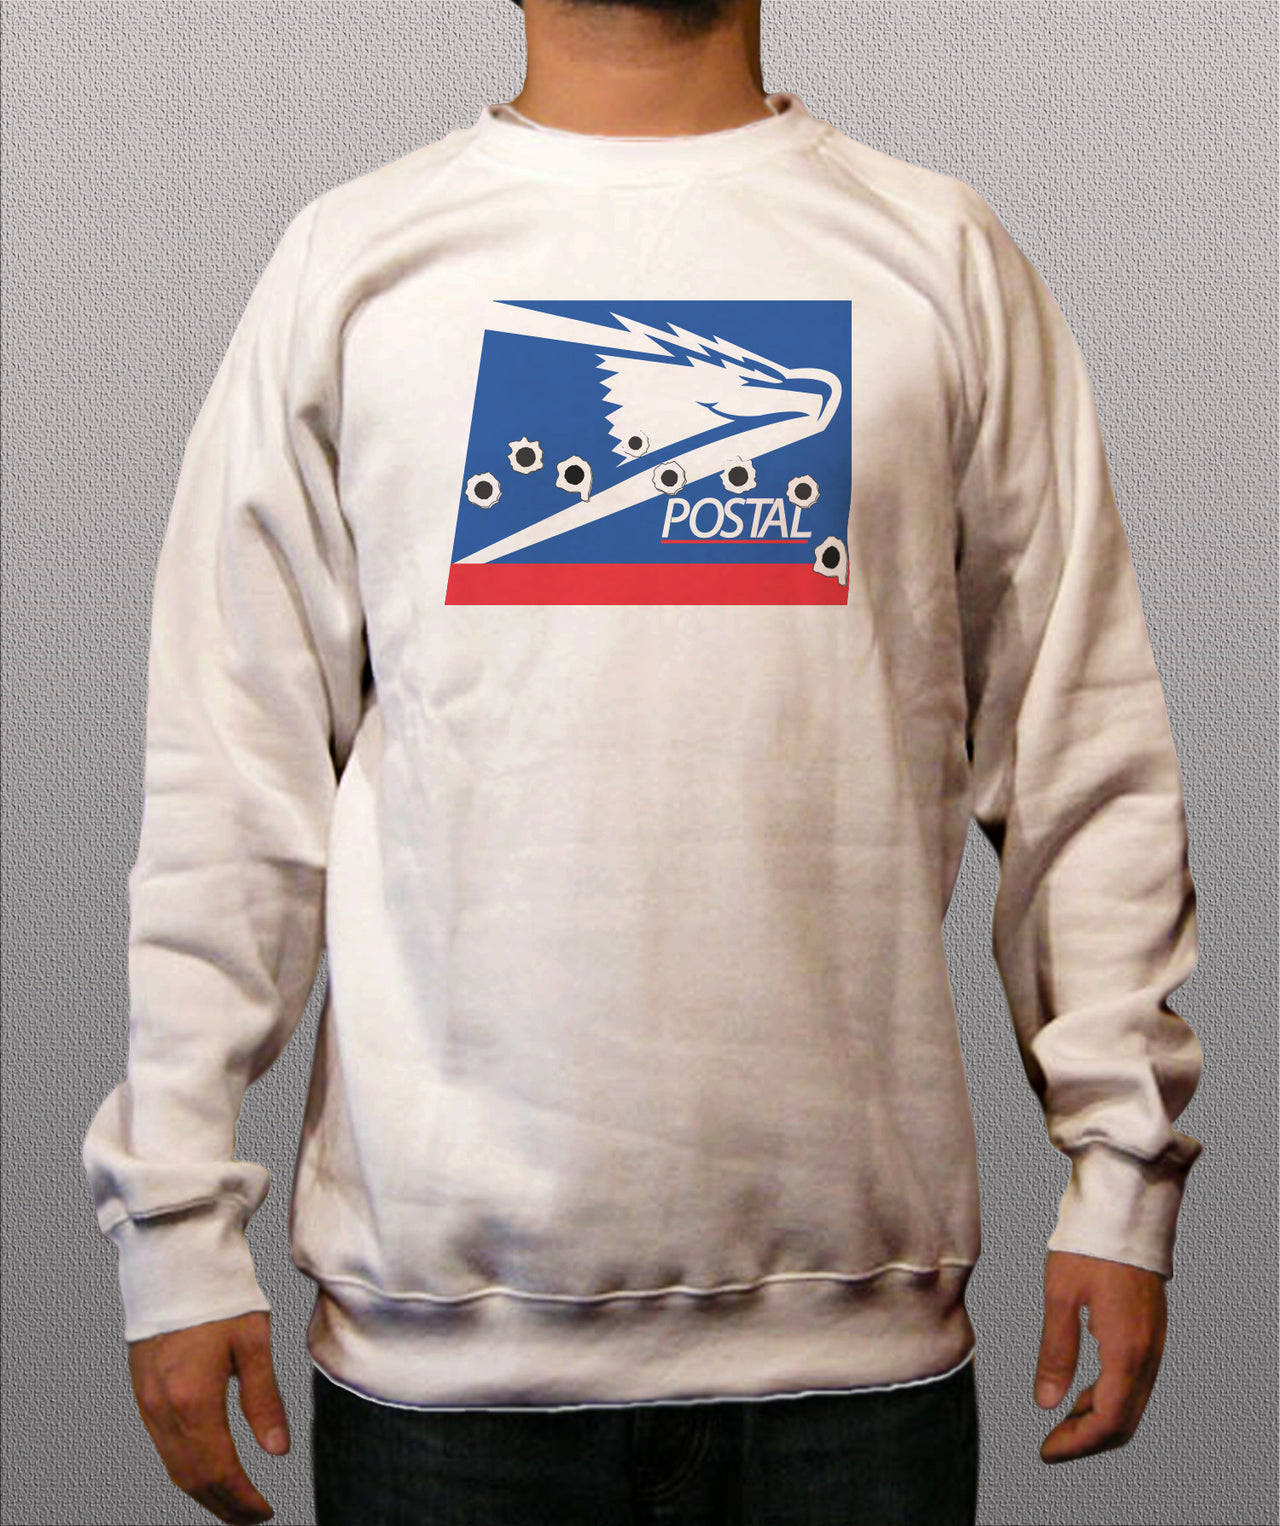 Postal White Crewneck Sweatshirt - TshirtNow.net - 1